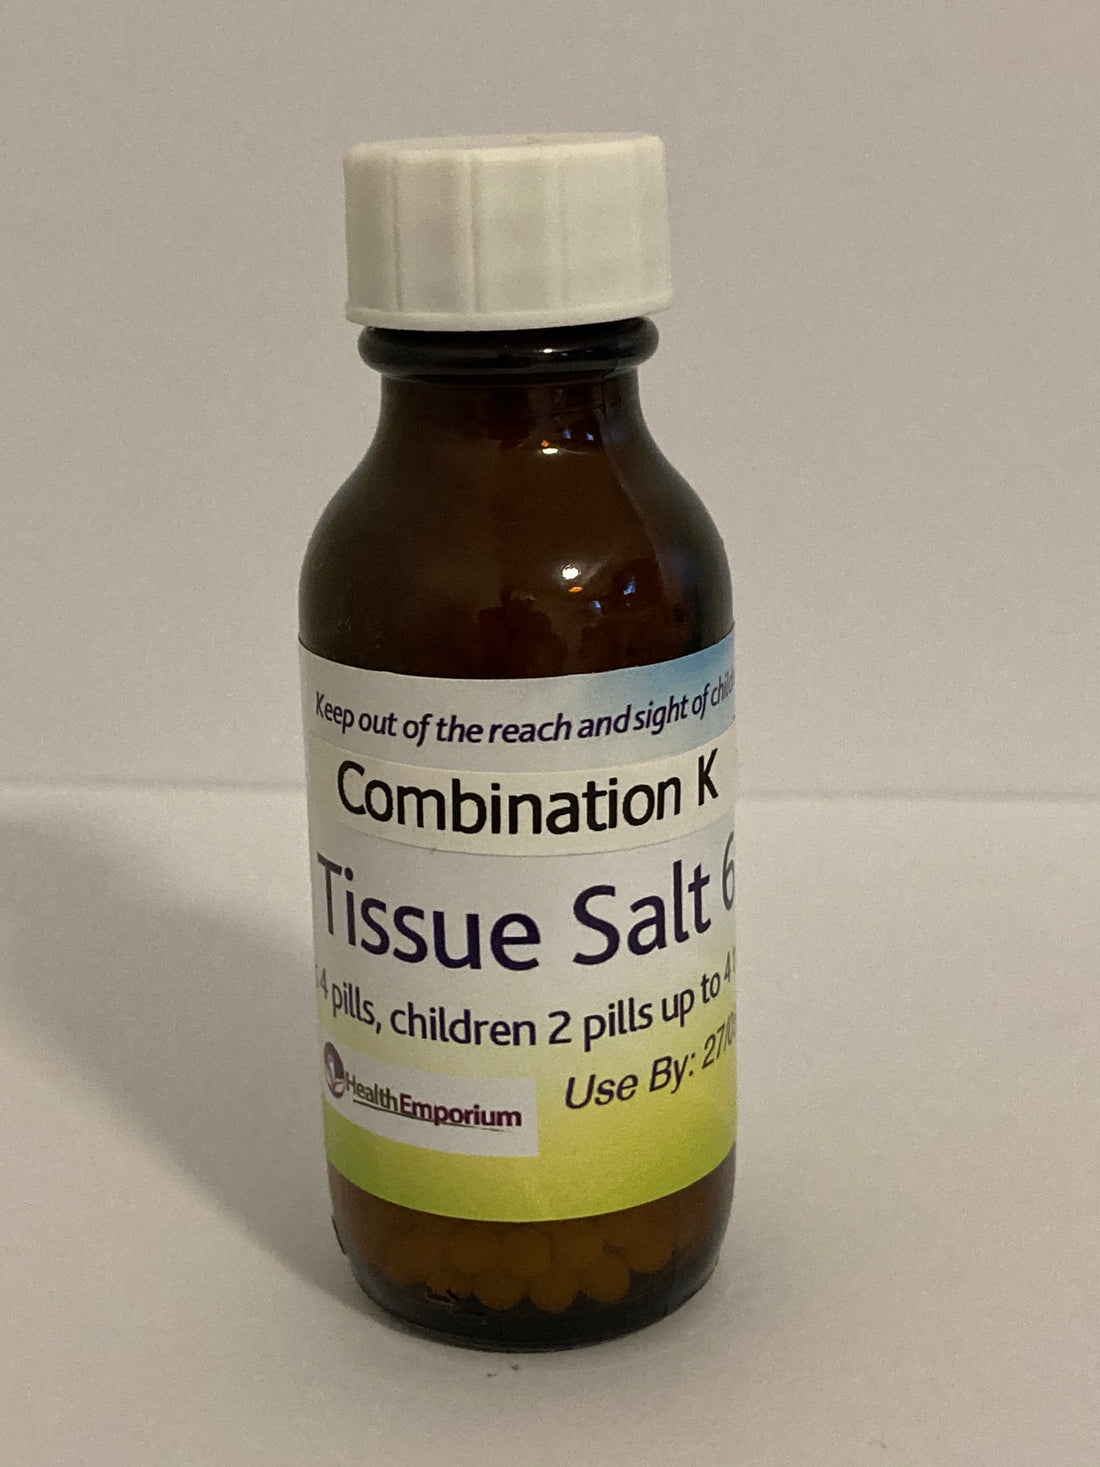 Combination K Tissue Salt